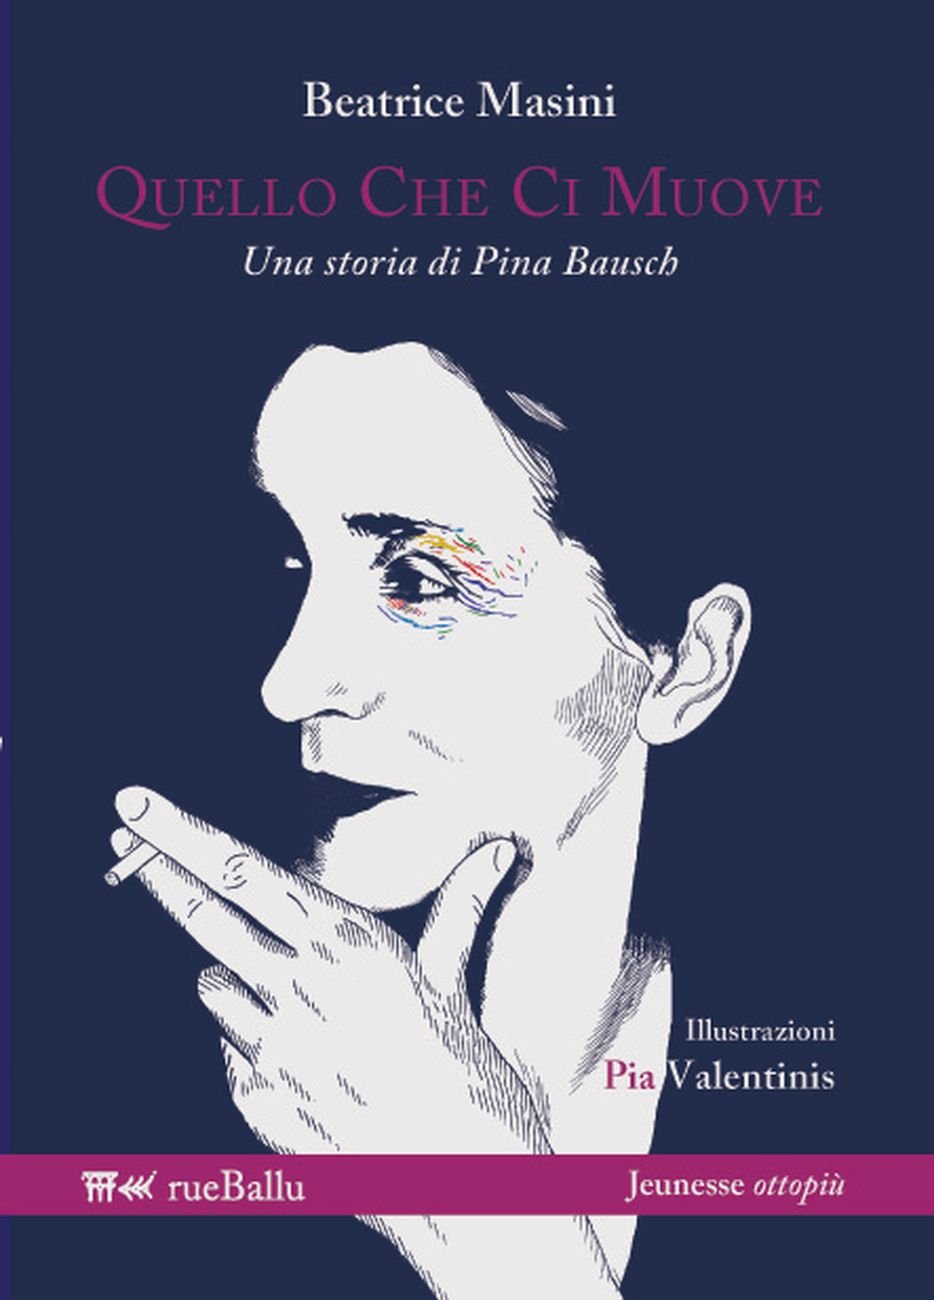 Beatrice Masini ‒ Quello che ci muove. Una storia di Pina Bausch (rueBallu, Palermo 2017). Cover